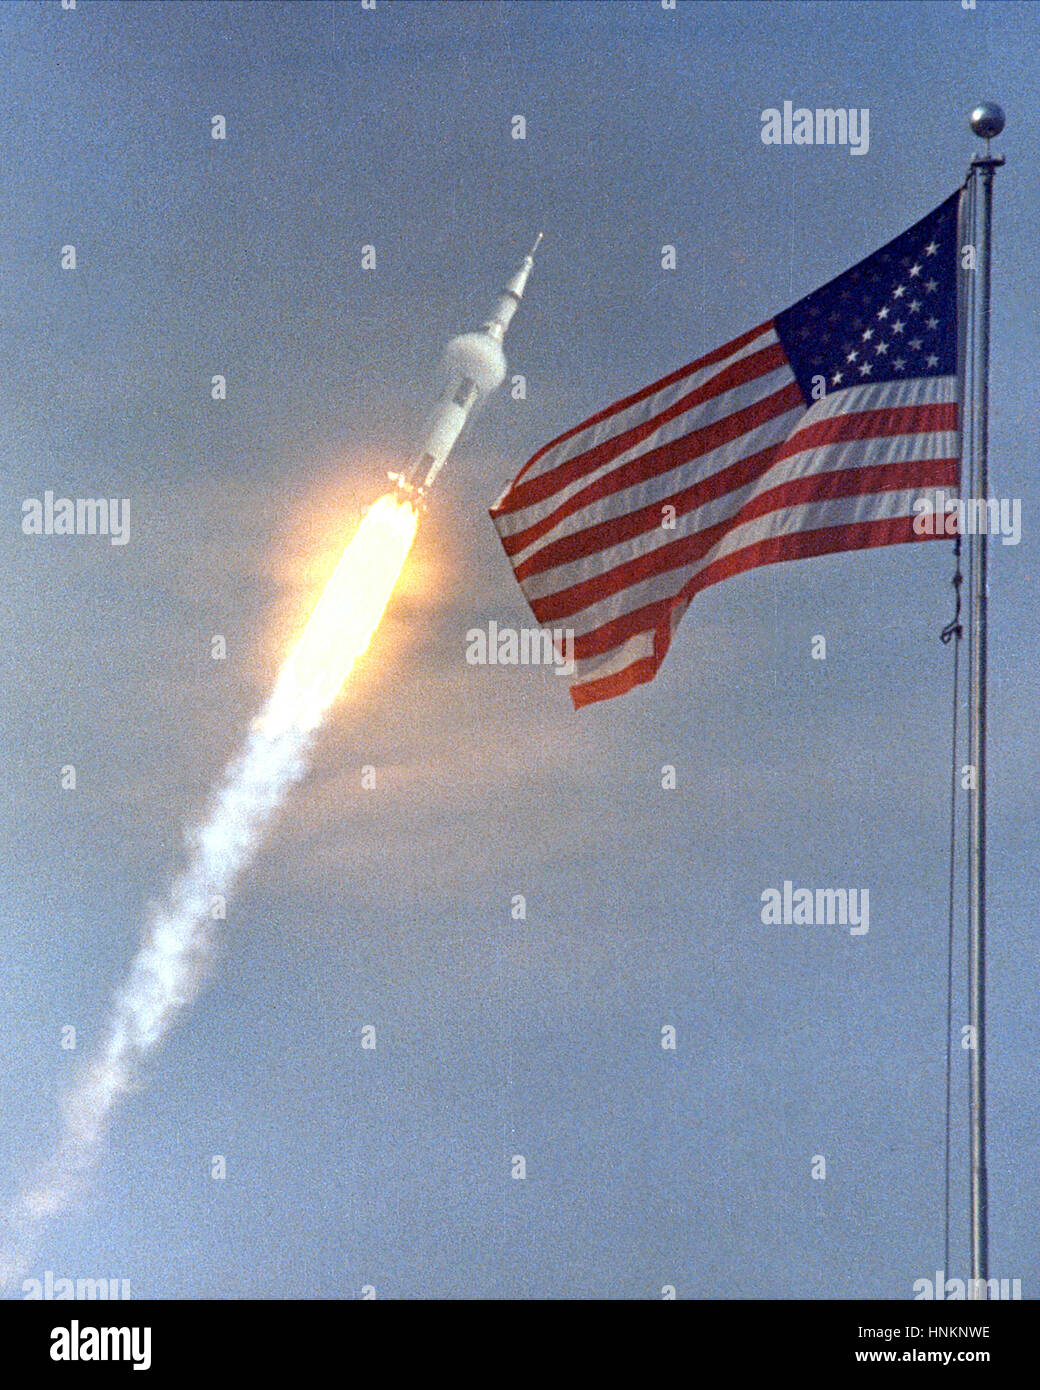 Le drapeau américain a annoncé le lancement d'Apollo 11, la première mission d'atterrissage lunaire, le 16 juillet 1969. L'énorme fusée Saturn V s'arrache du Centre spatial Kennedy de la NASA avec les astronautes Neil A. Armstrong, Michael Collins et Edwin "Buzz" Aldrin à 9:32 HAE. Quatre jours plus tard, le 20 juillet, Armstrong et Aldrin ont atterri sur la surface de la lune pendant que Collins surcharge dans l'orbite du module de commande. Armstrong et Aldrin recueilli des échantillons de matériau lunaire et déployé des expériences scientifiques que les données transmises à propos de l'environnement lunaire. Image Crédit : NASA Banque D'Images